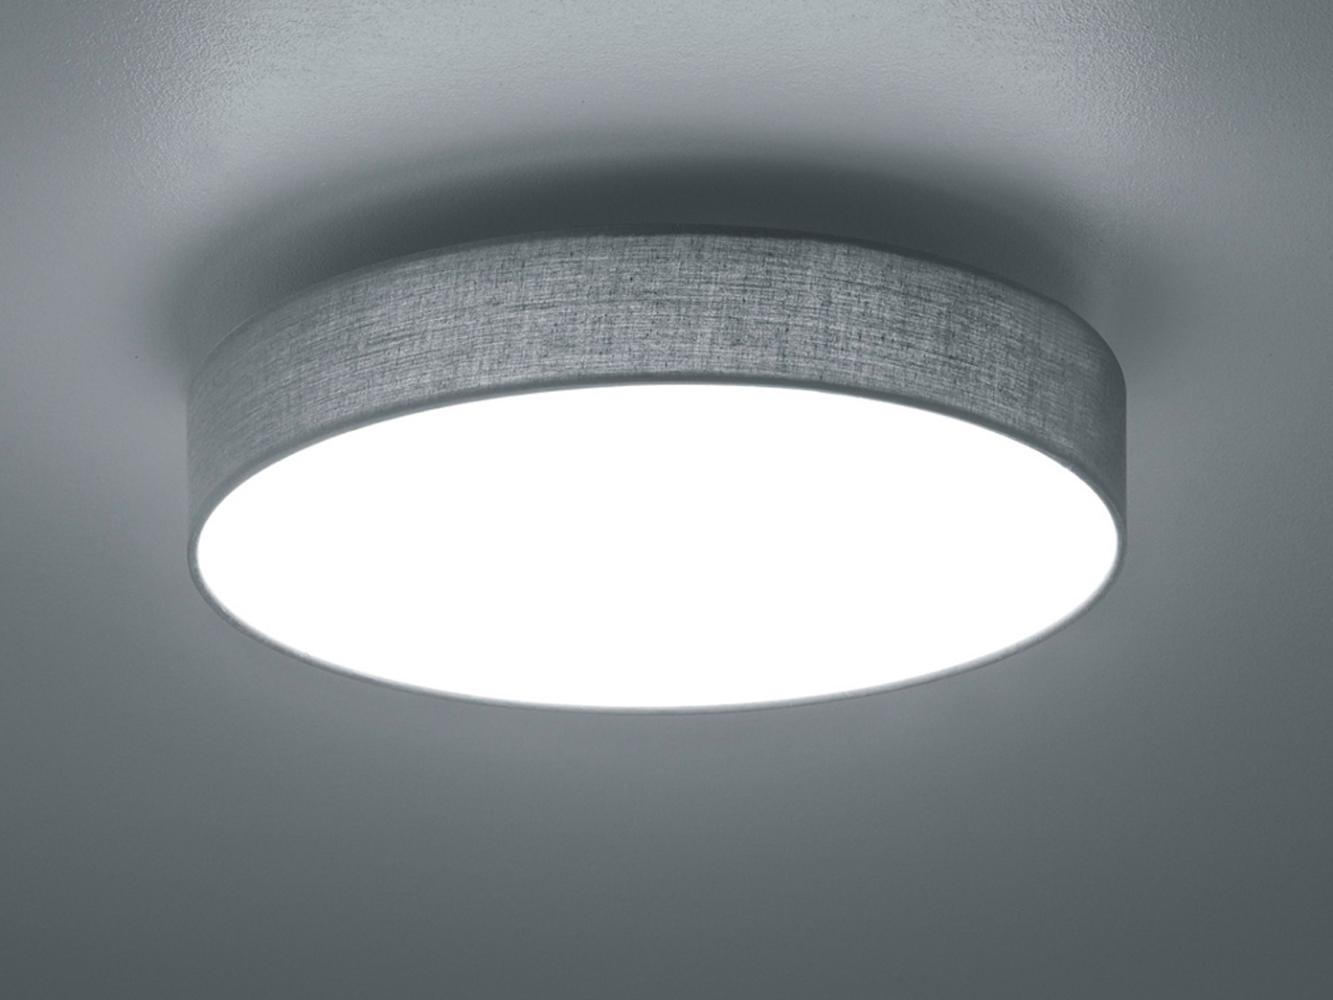 Deckenlampe Deckenleuchte Wohnraumleuchte LED LUGANO 22 Watt grau Bild 1